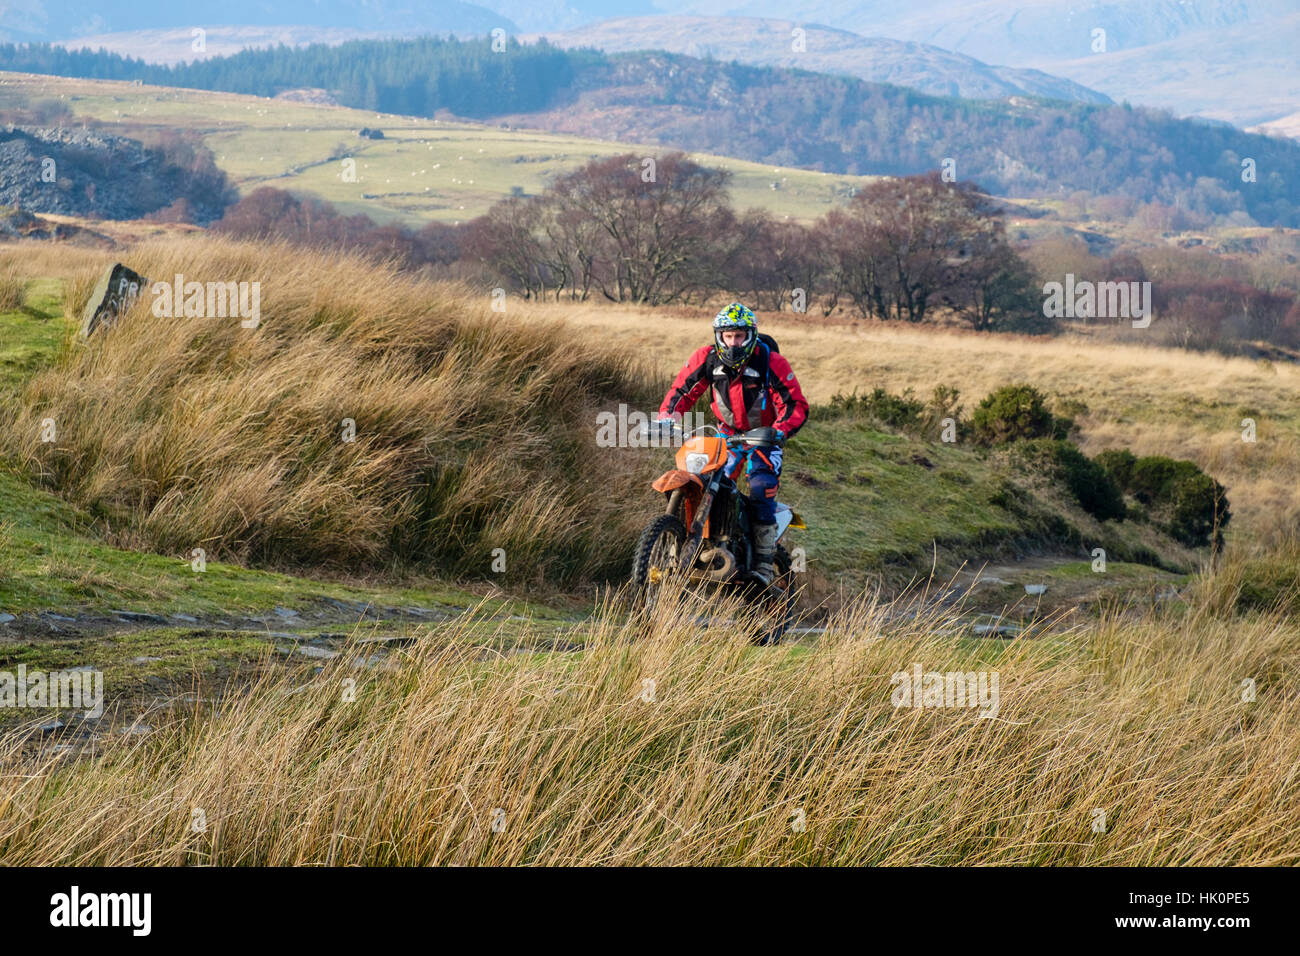 Un homme monté sur un vélo de saleté sur une voie de pays dans le parc national de Snowdonia. Capel Curig, Conwy, Pays de Galles, Royaume-Uni, Angleterre. Banque D'Images